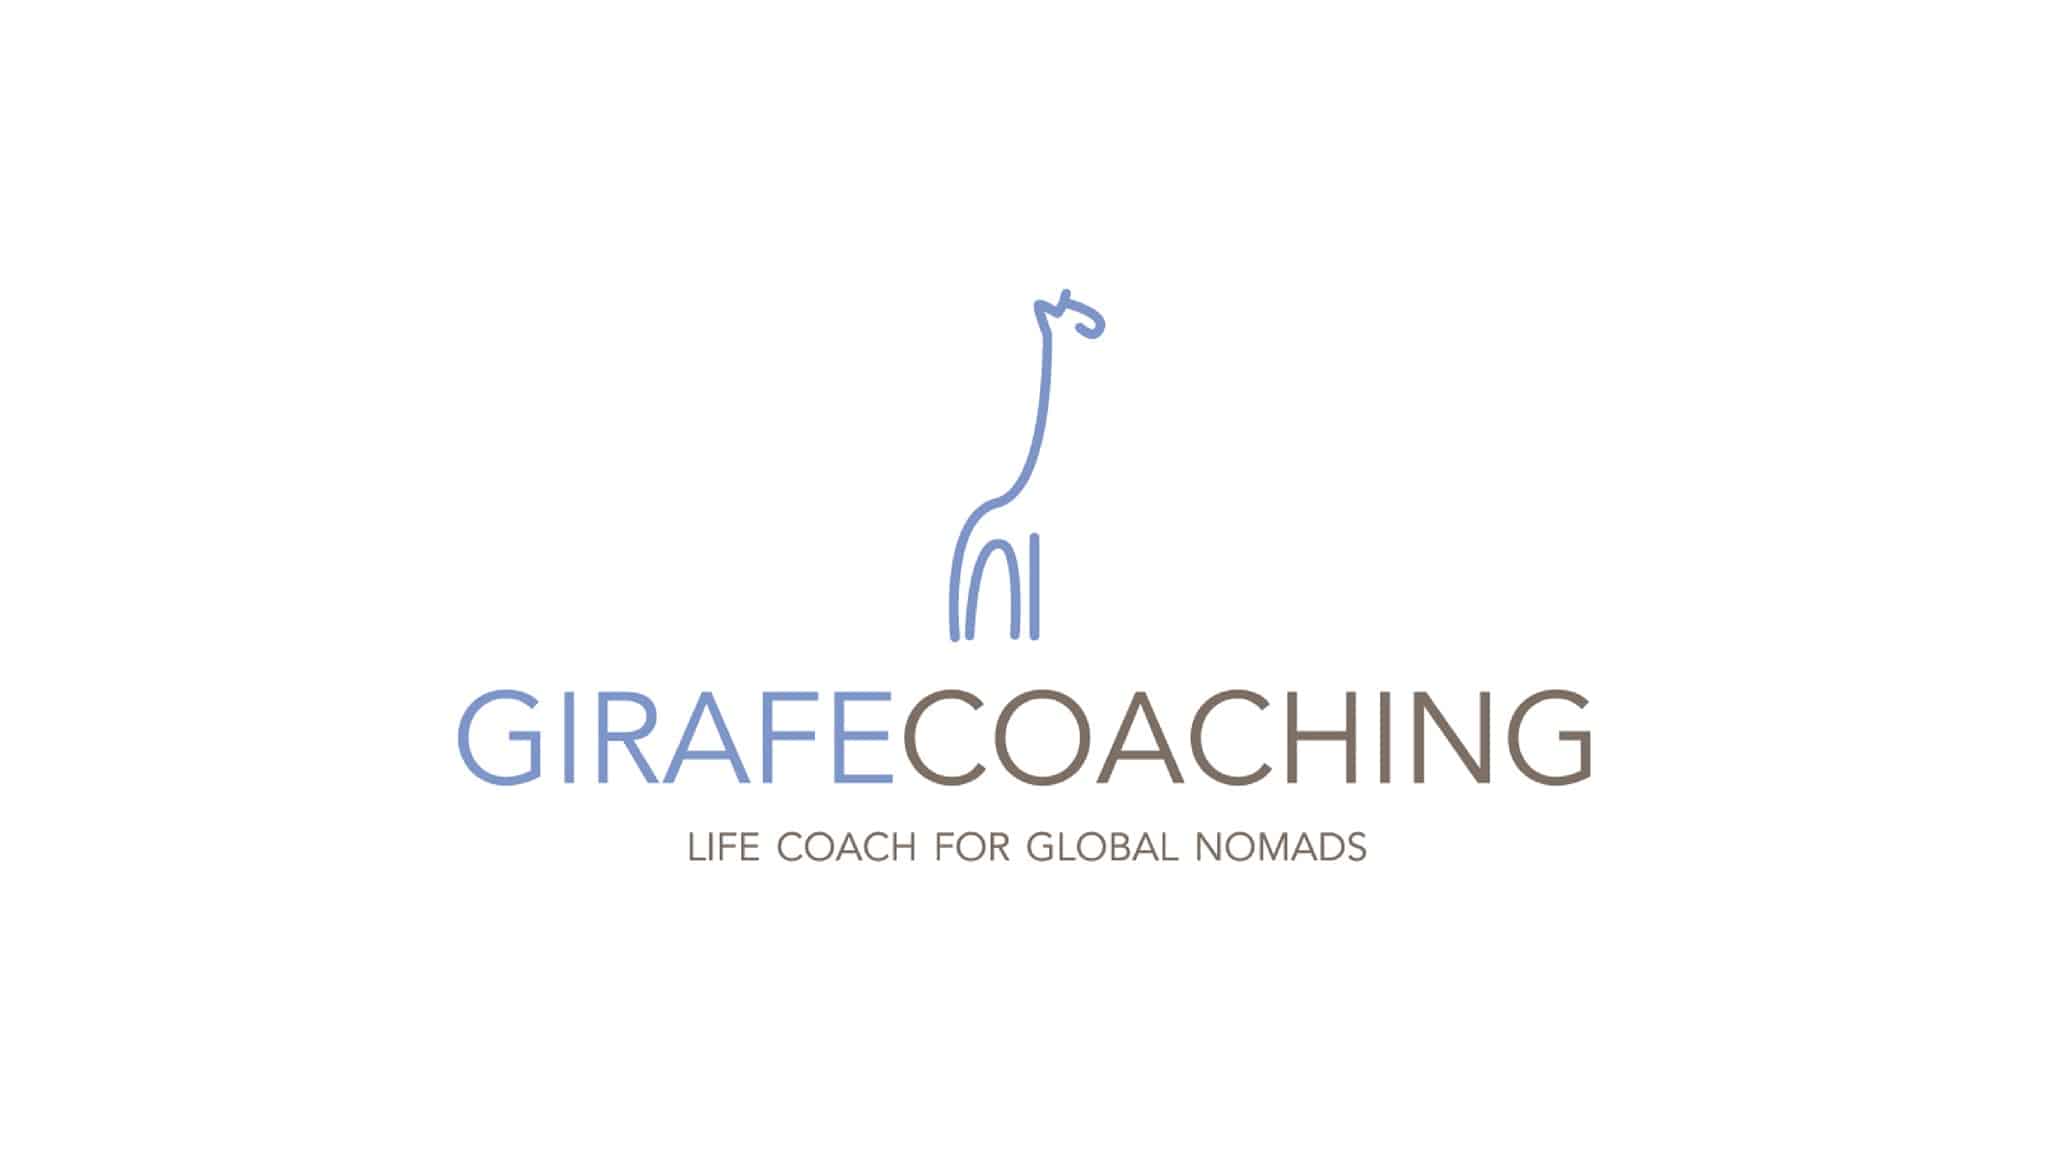 Girafe Coaching Main 2